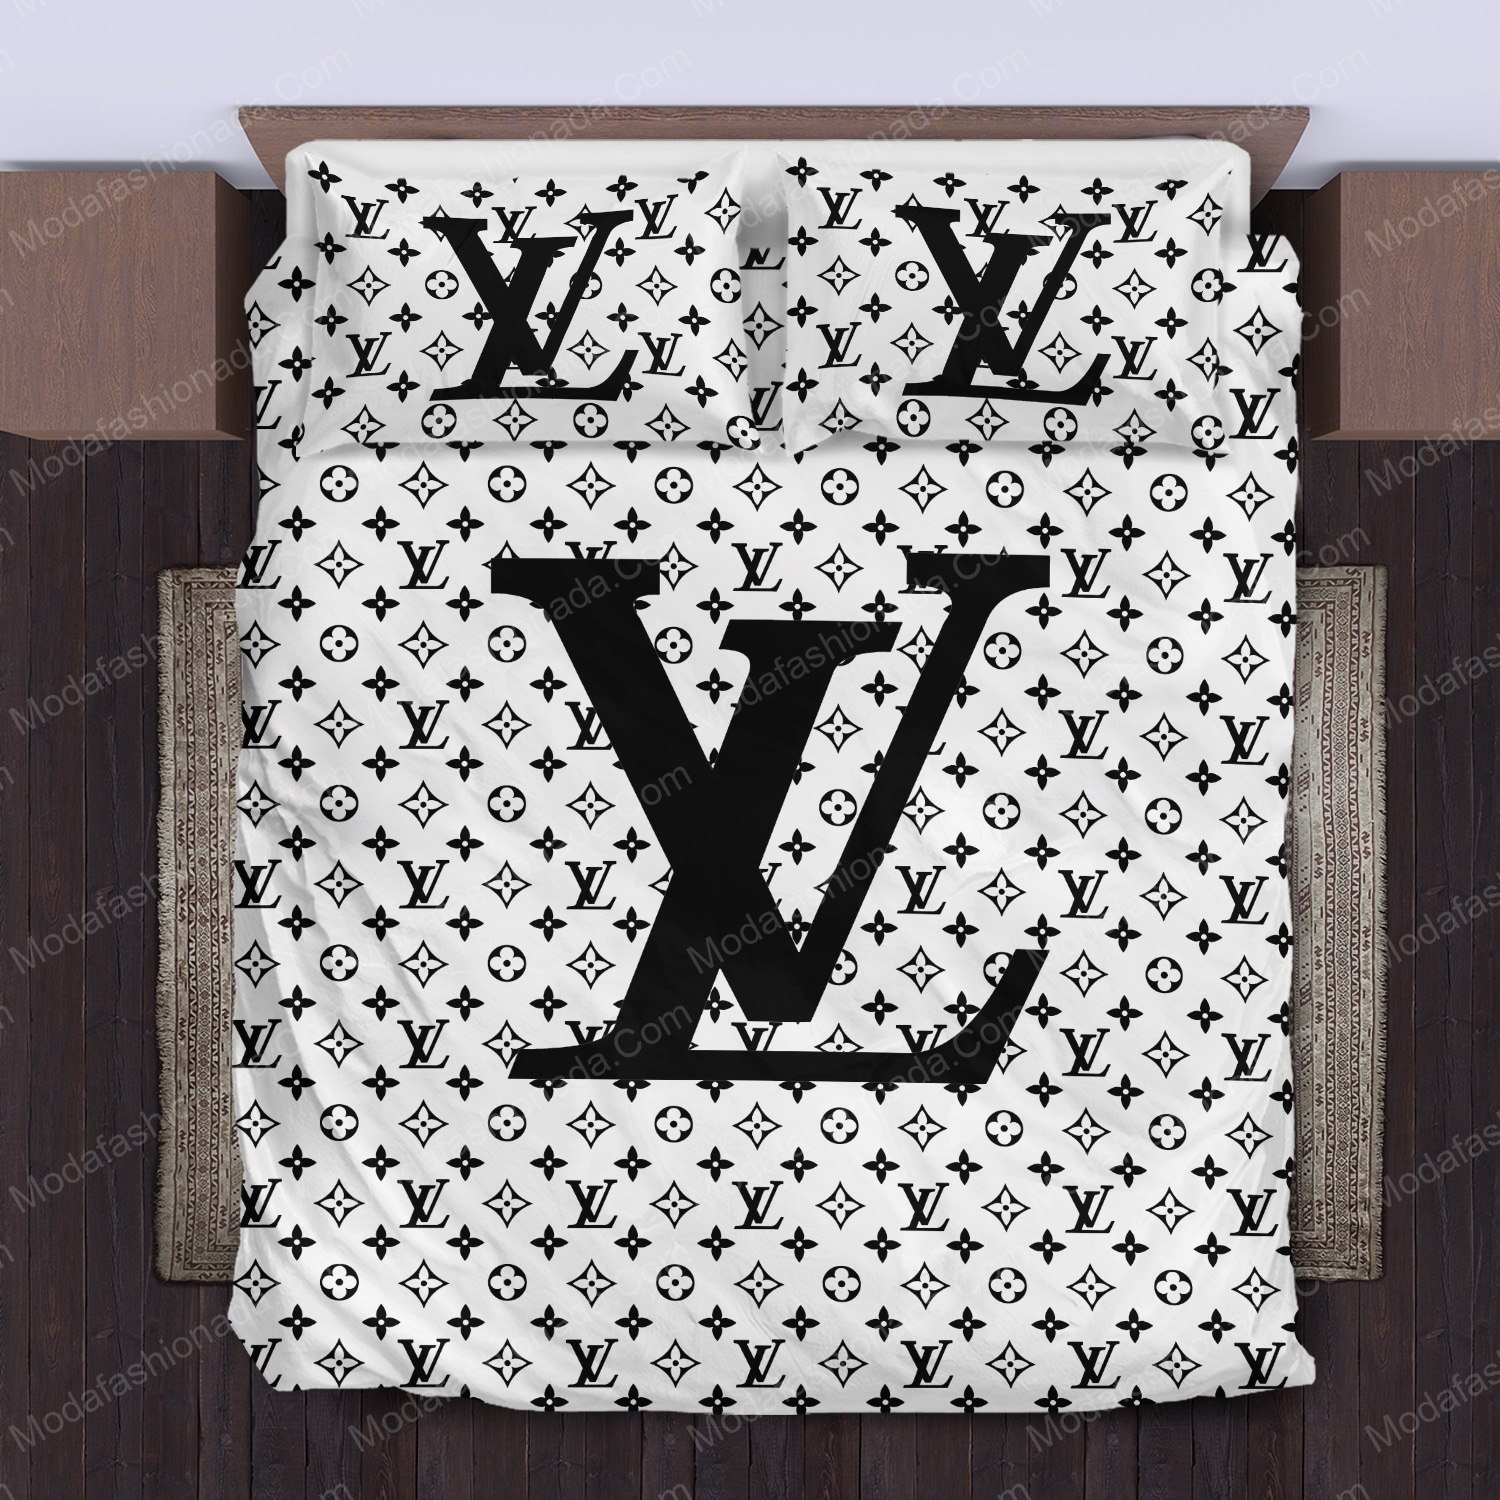 Black Veinstone Louis Vuitton Bedding Sets in 2023